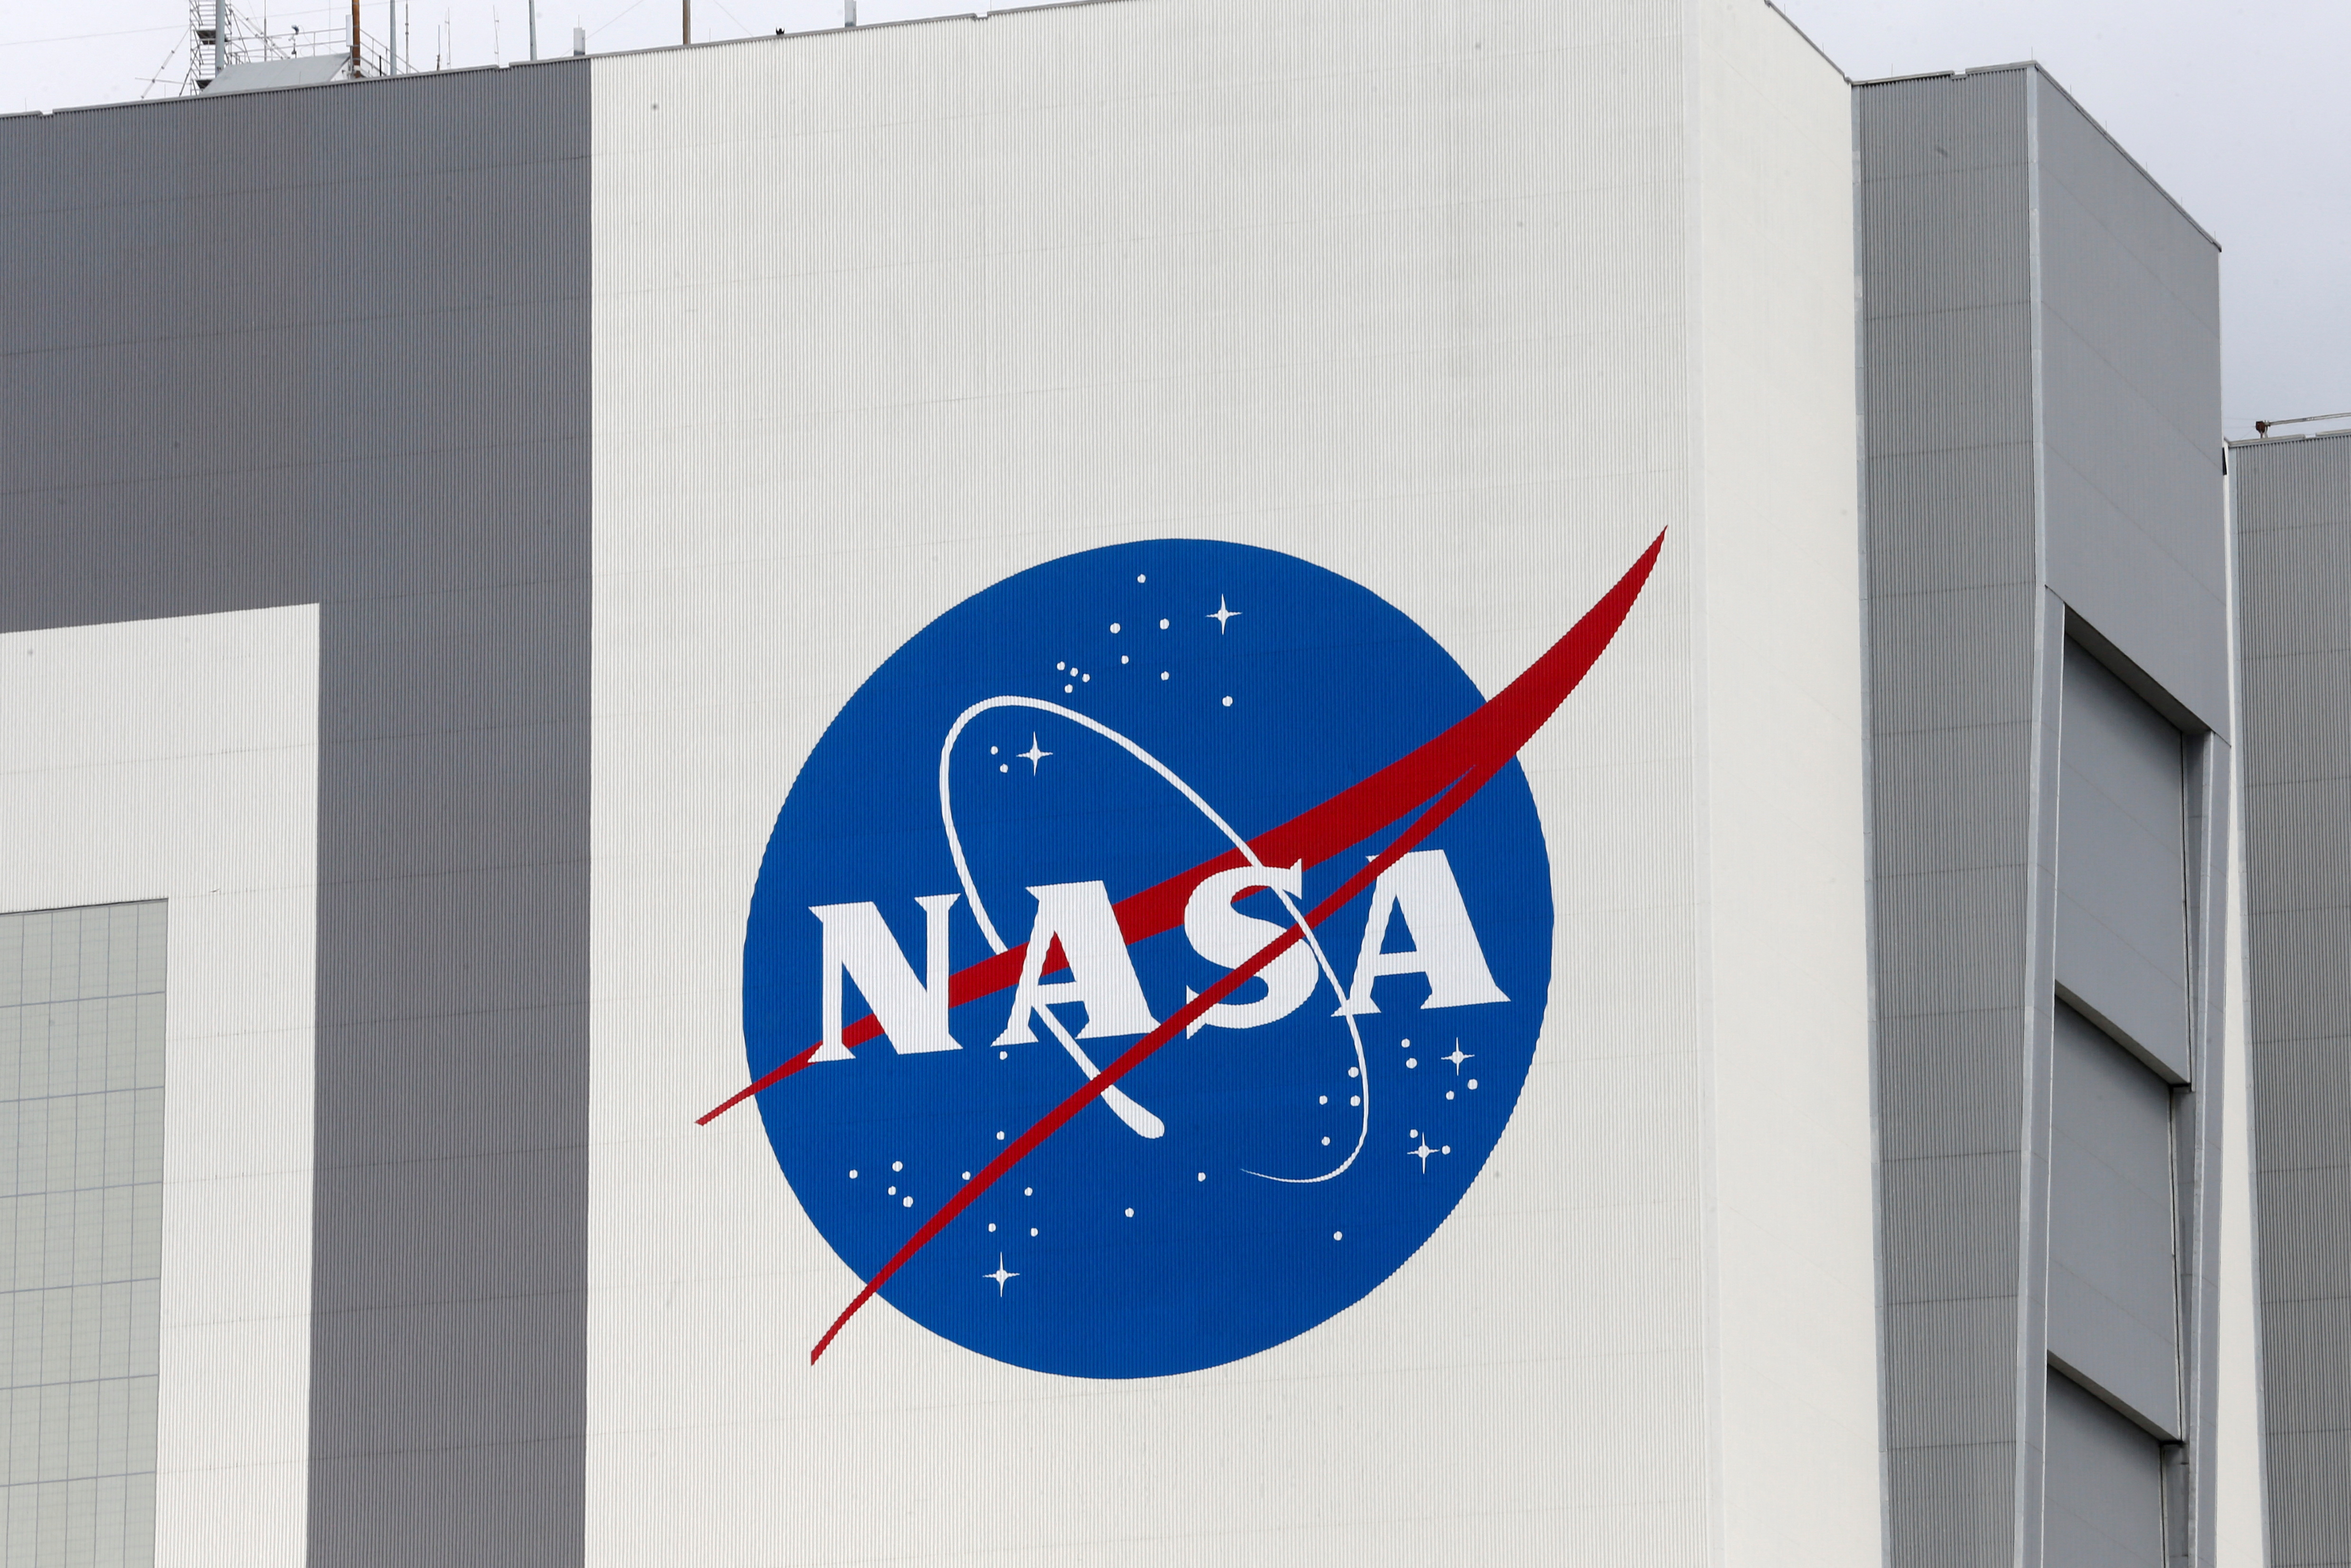 Las imagenes del telescopio infrarrojo espacial James Webb fueron dadas a conocer a principios de mes